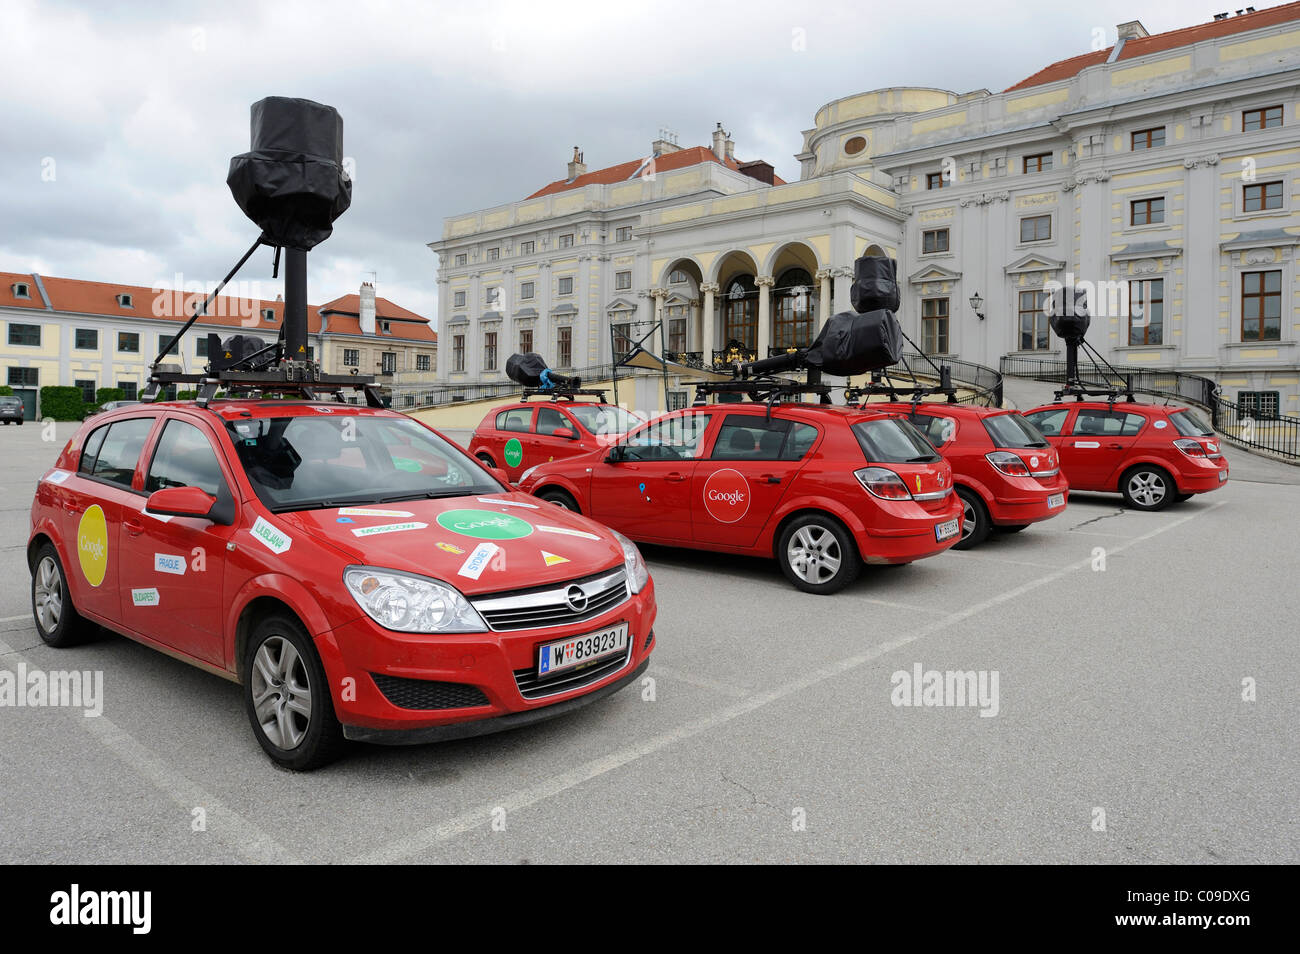 Google Street View i veicoli con telecamere speciali su standby in un parcheggio sito a Vienna, Austria, Europa Foto Stock